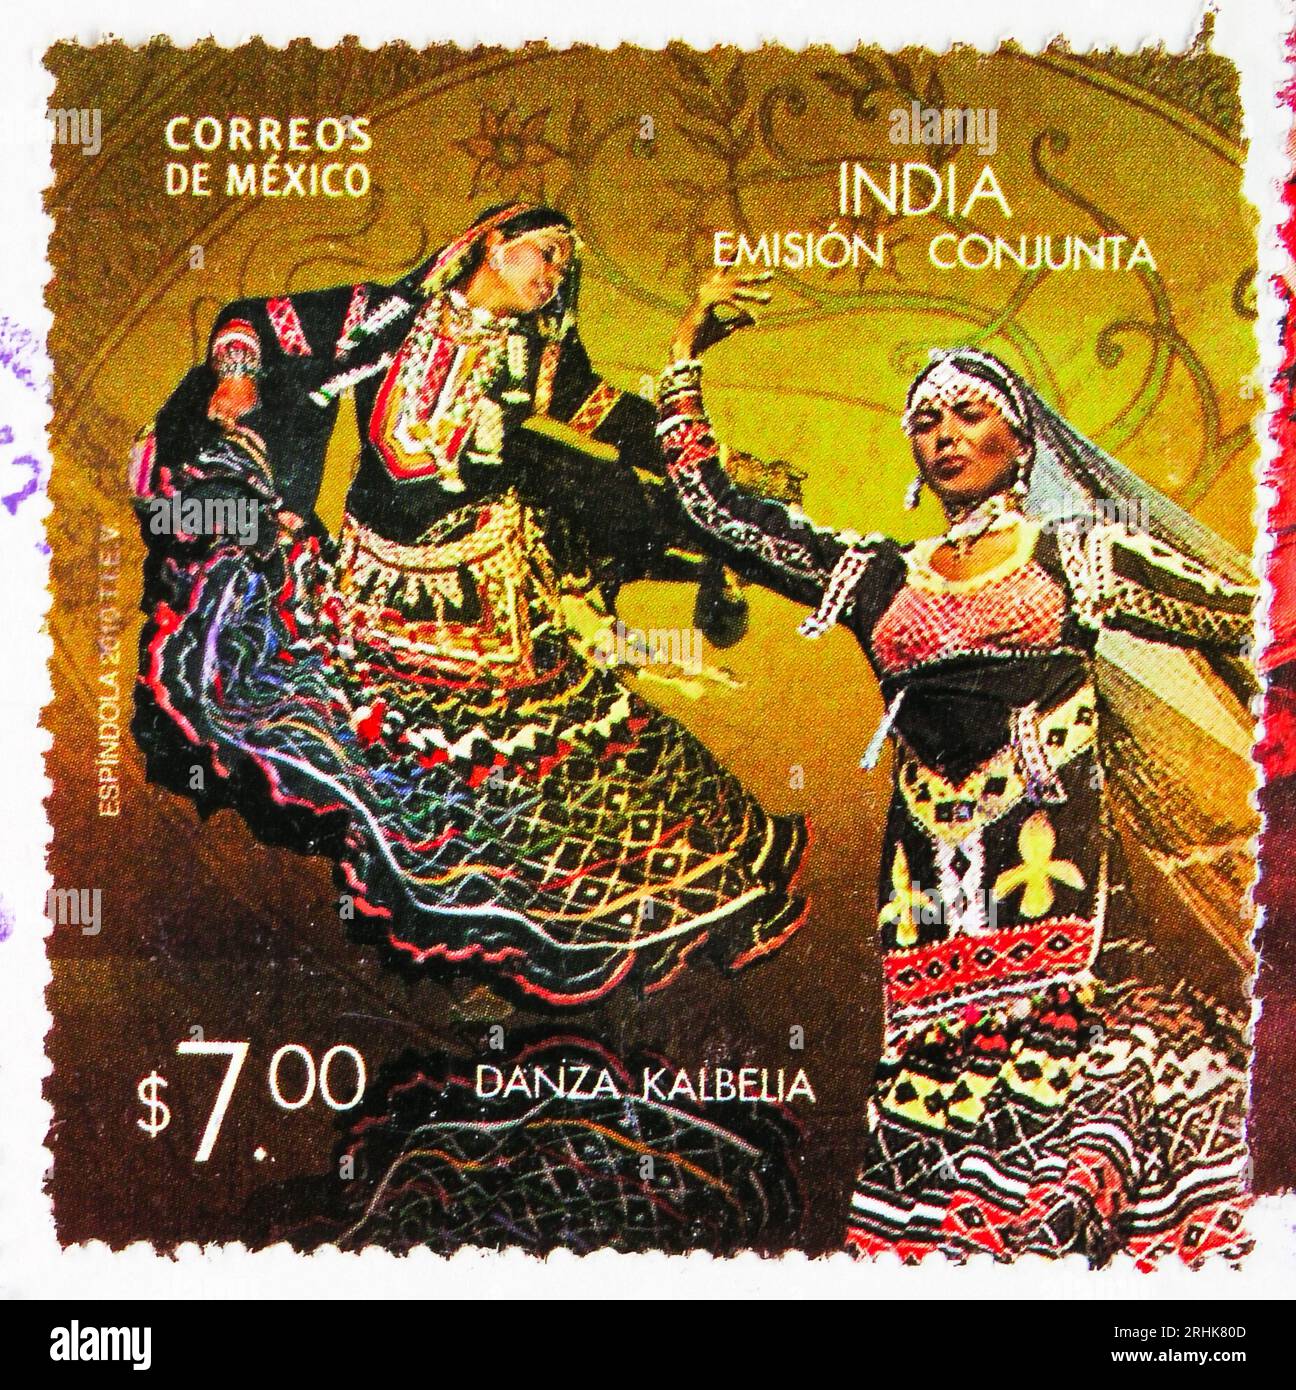 MOSCOU, RUSSIE - JUIN 8 2023 : le timbre-poste imprimé au Mexique montre l'émission conjointe Mexique-Inde, vers 2010 Banque D'Images